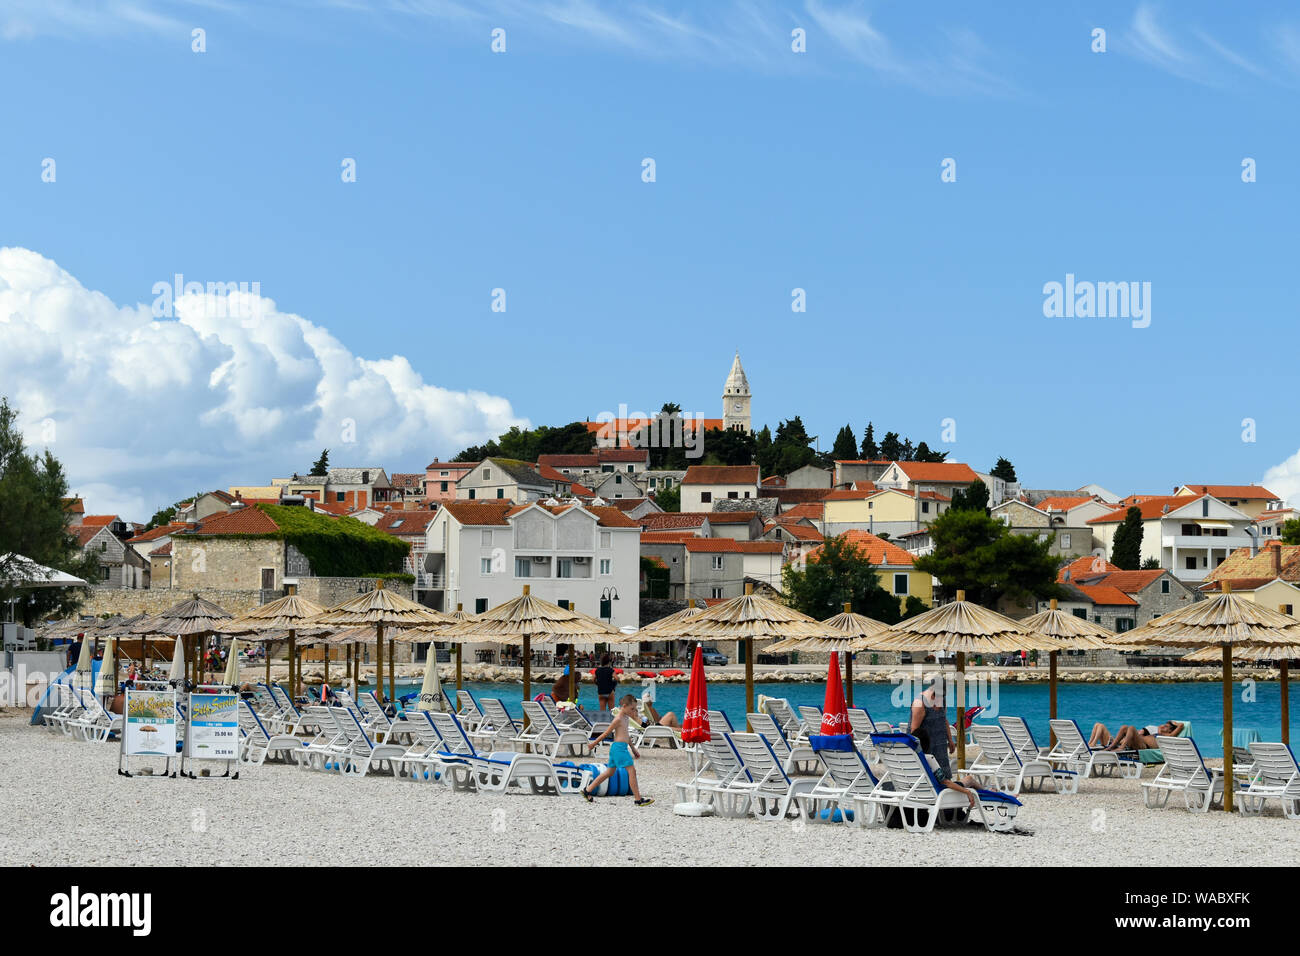 Primosten, Croacia - Julio 29, 2019: la gente en playa hermosa. Agradable, cálido día de verano, con el cielo azul y el mar. Foto de stock